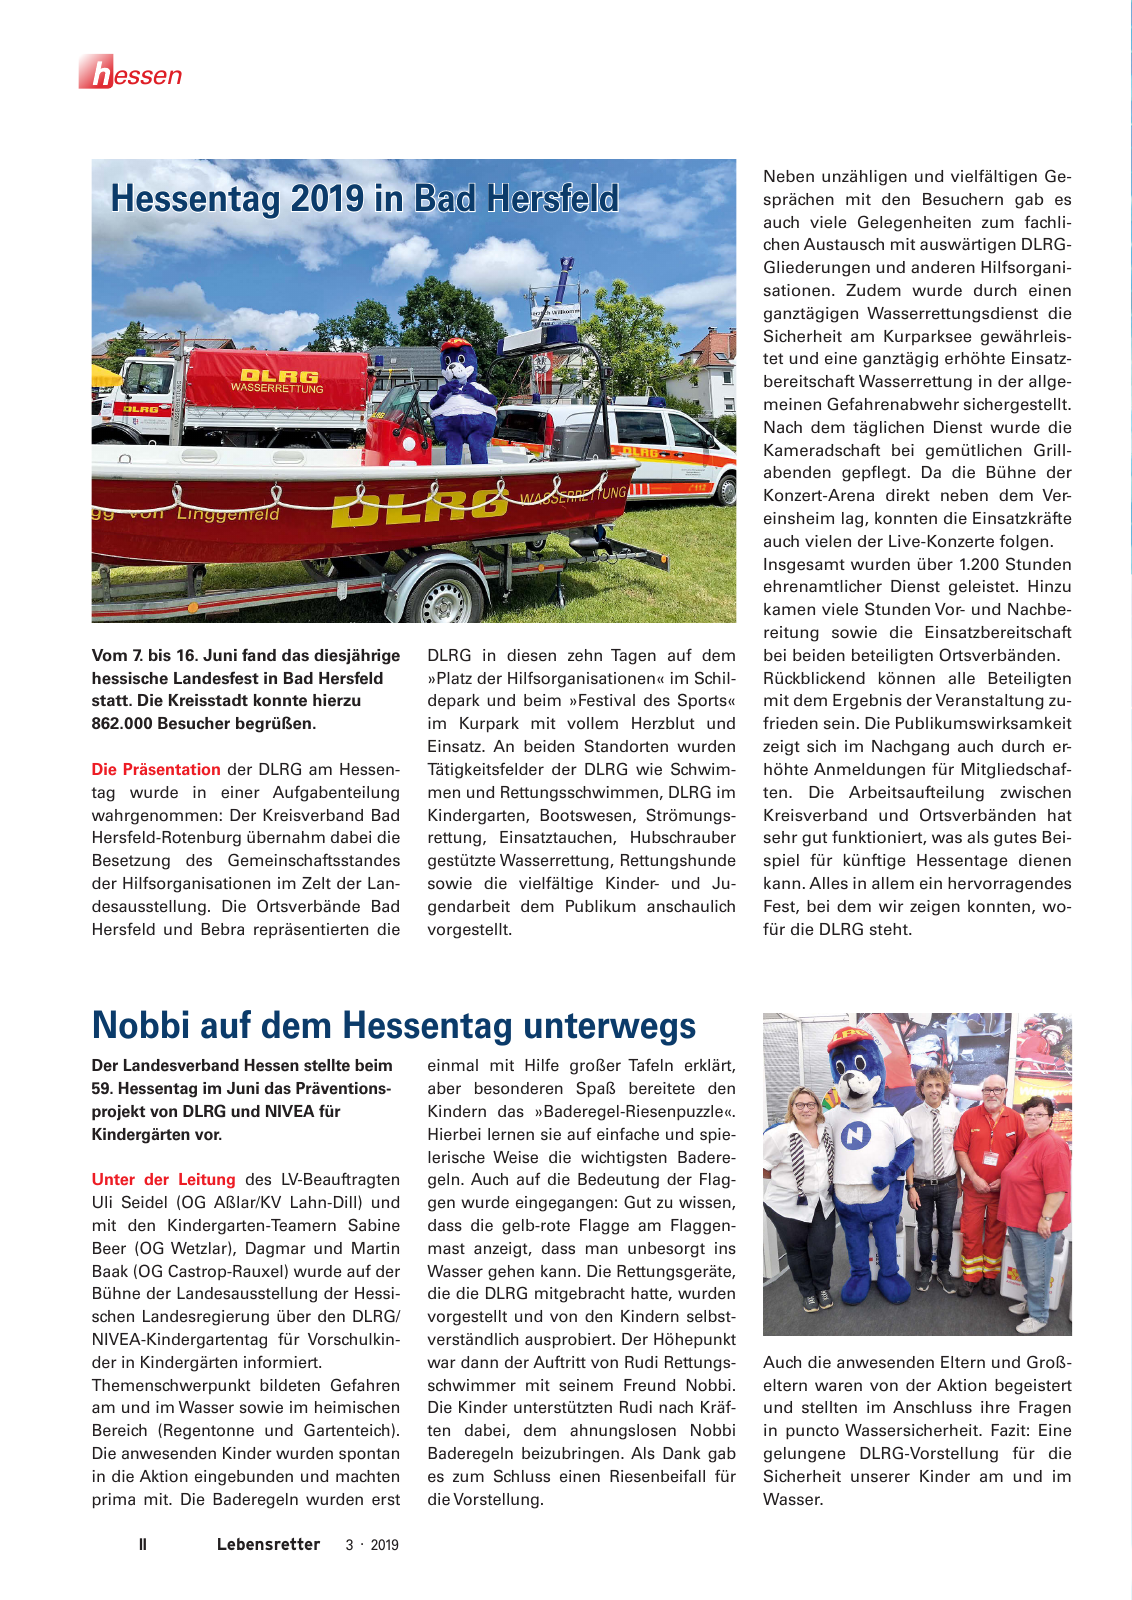 Vorschau Lebensretter 3/2019 - Hessen Regionalausgabe Seite 4